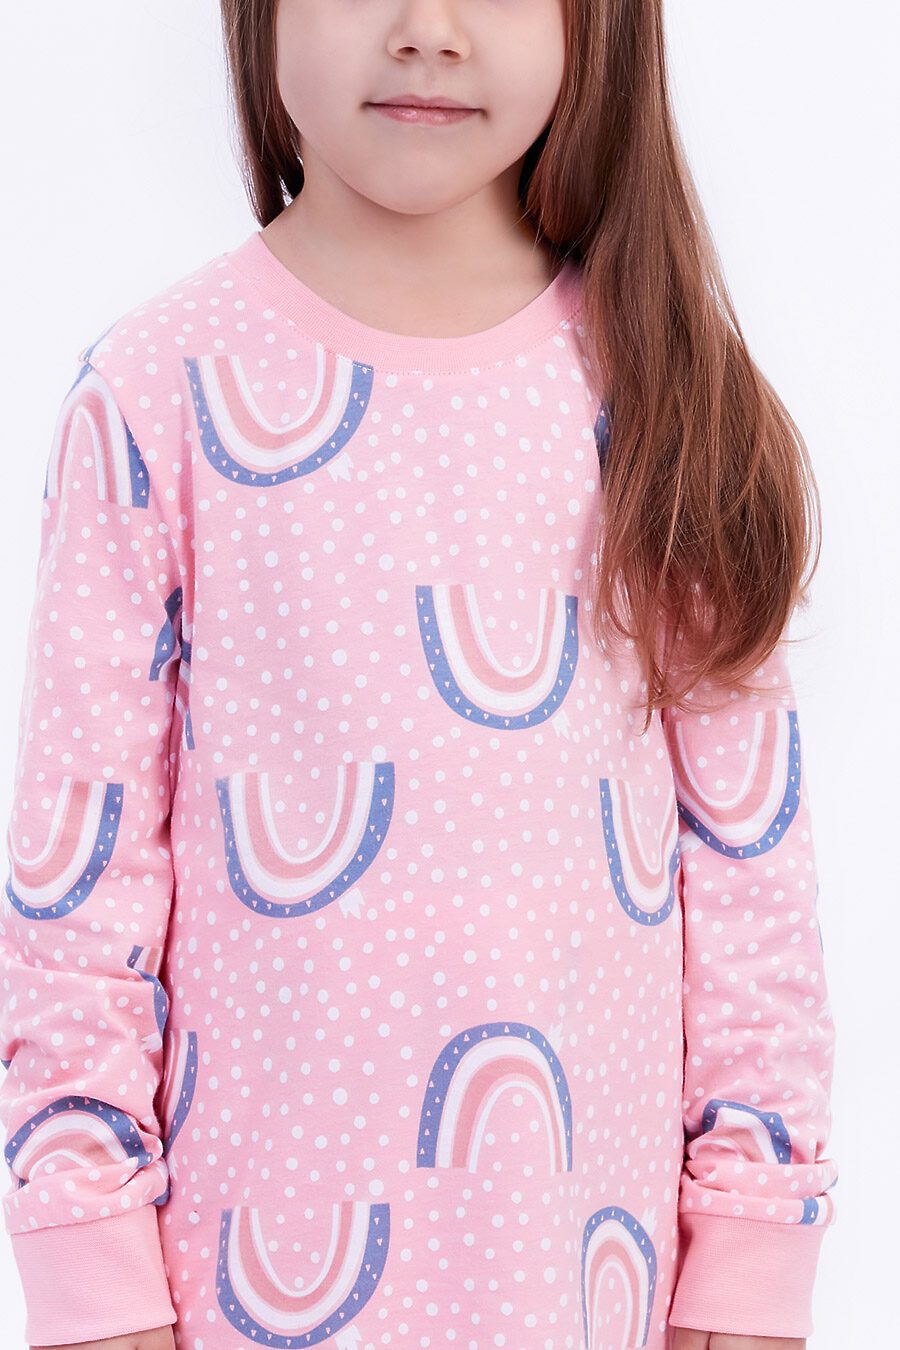 Пижама для девочек ELEMENTARNO 742814 купить оптом от производителя. Совместная покупка детской одежды в OptMoyo